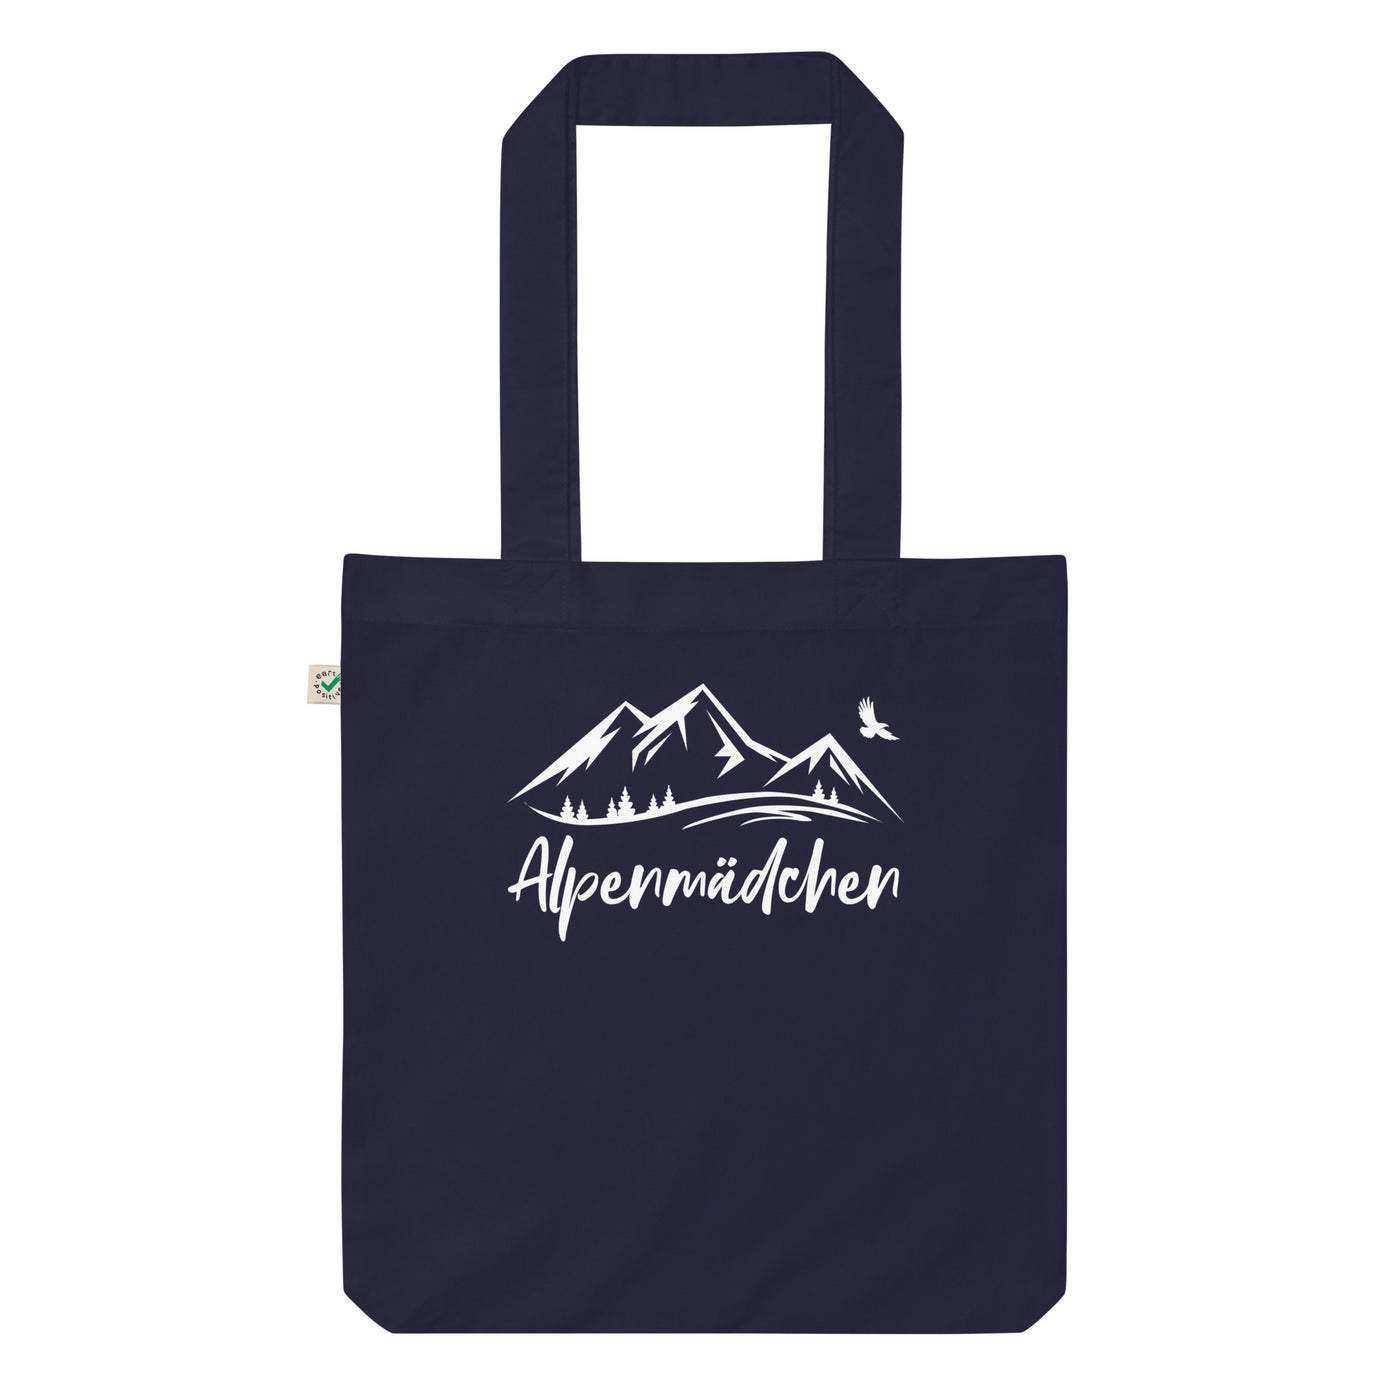 Alpenmadchen - Organic Einkaufstasche berge Navy